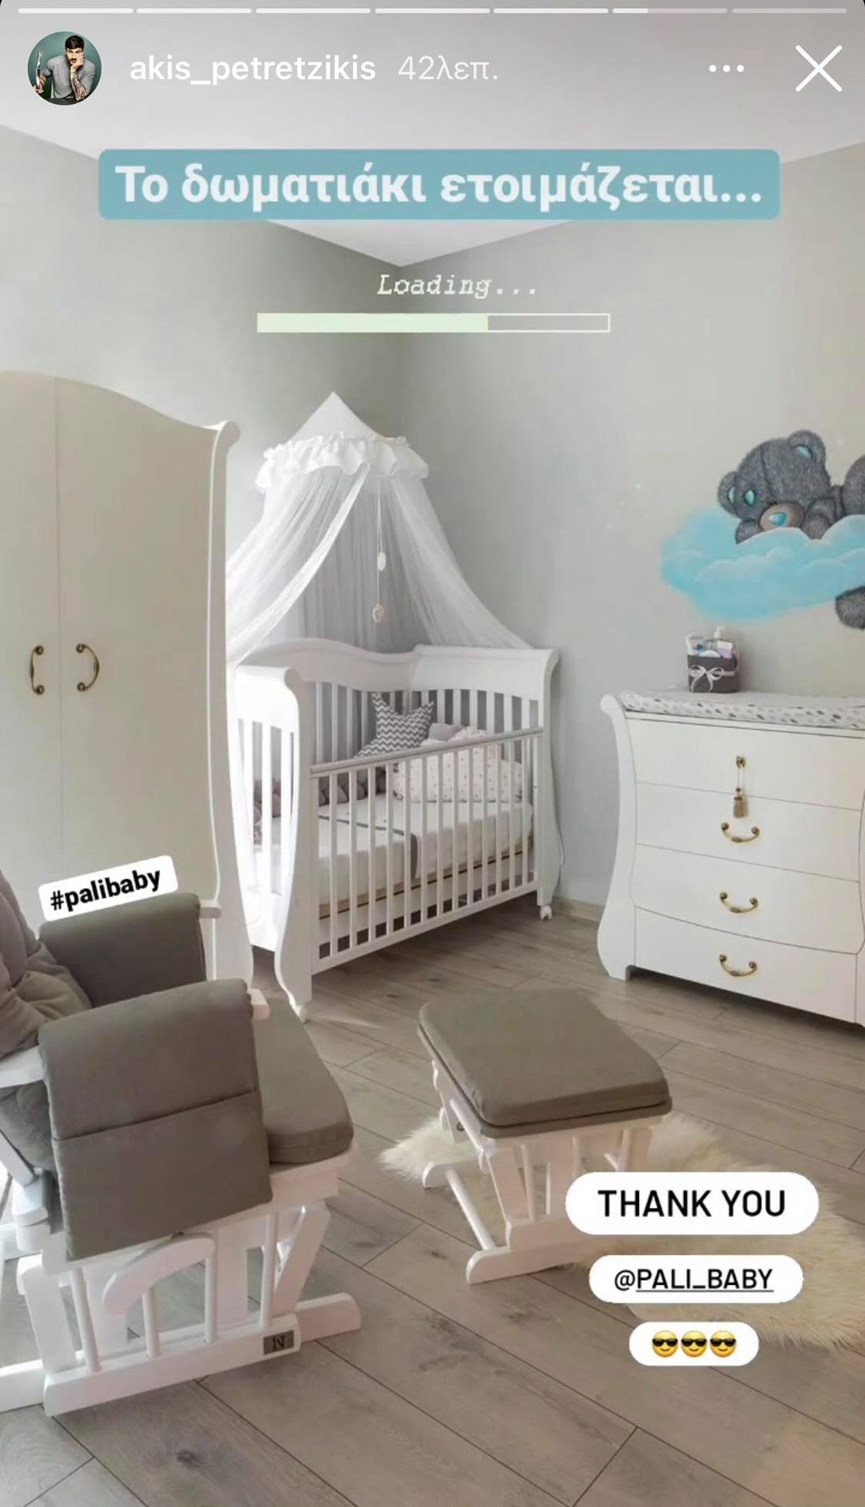 Άκης Πετρετζίκης: Δείτε για πρώτη φορά το δωμάτιο του γιου του!